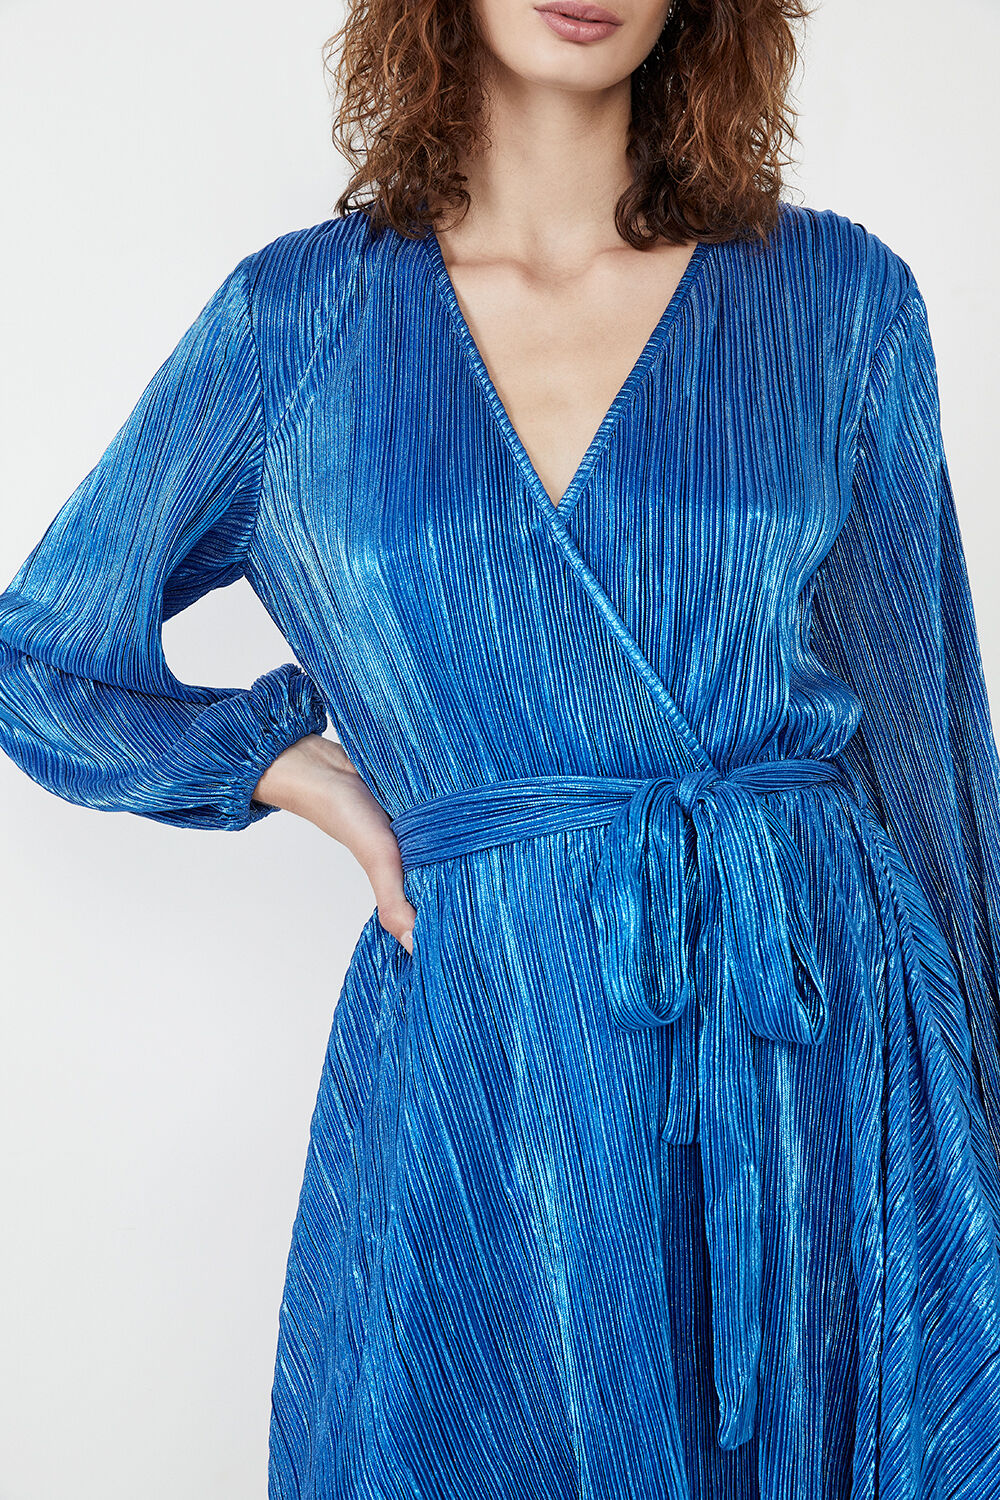 BELLISSA PLEAT DRESS in colour DAZZLING BLUE